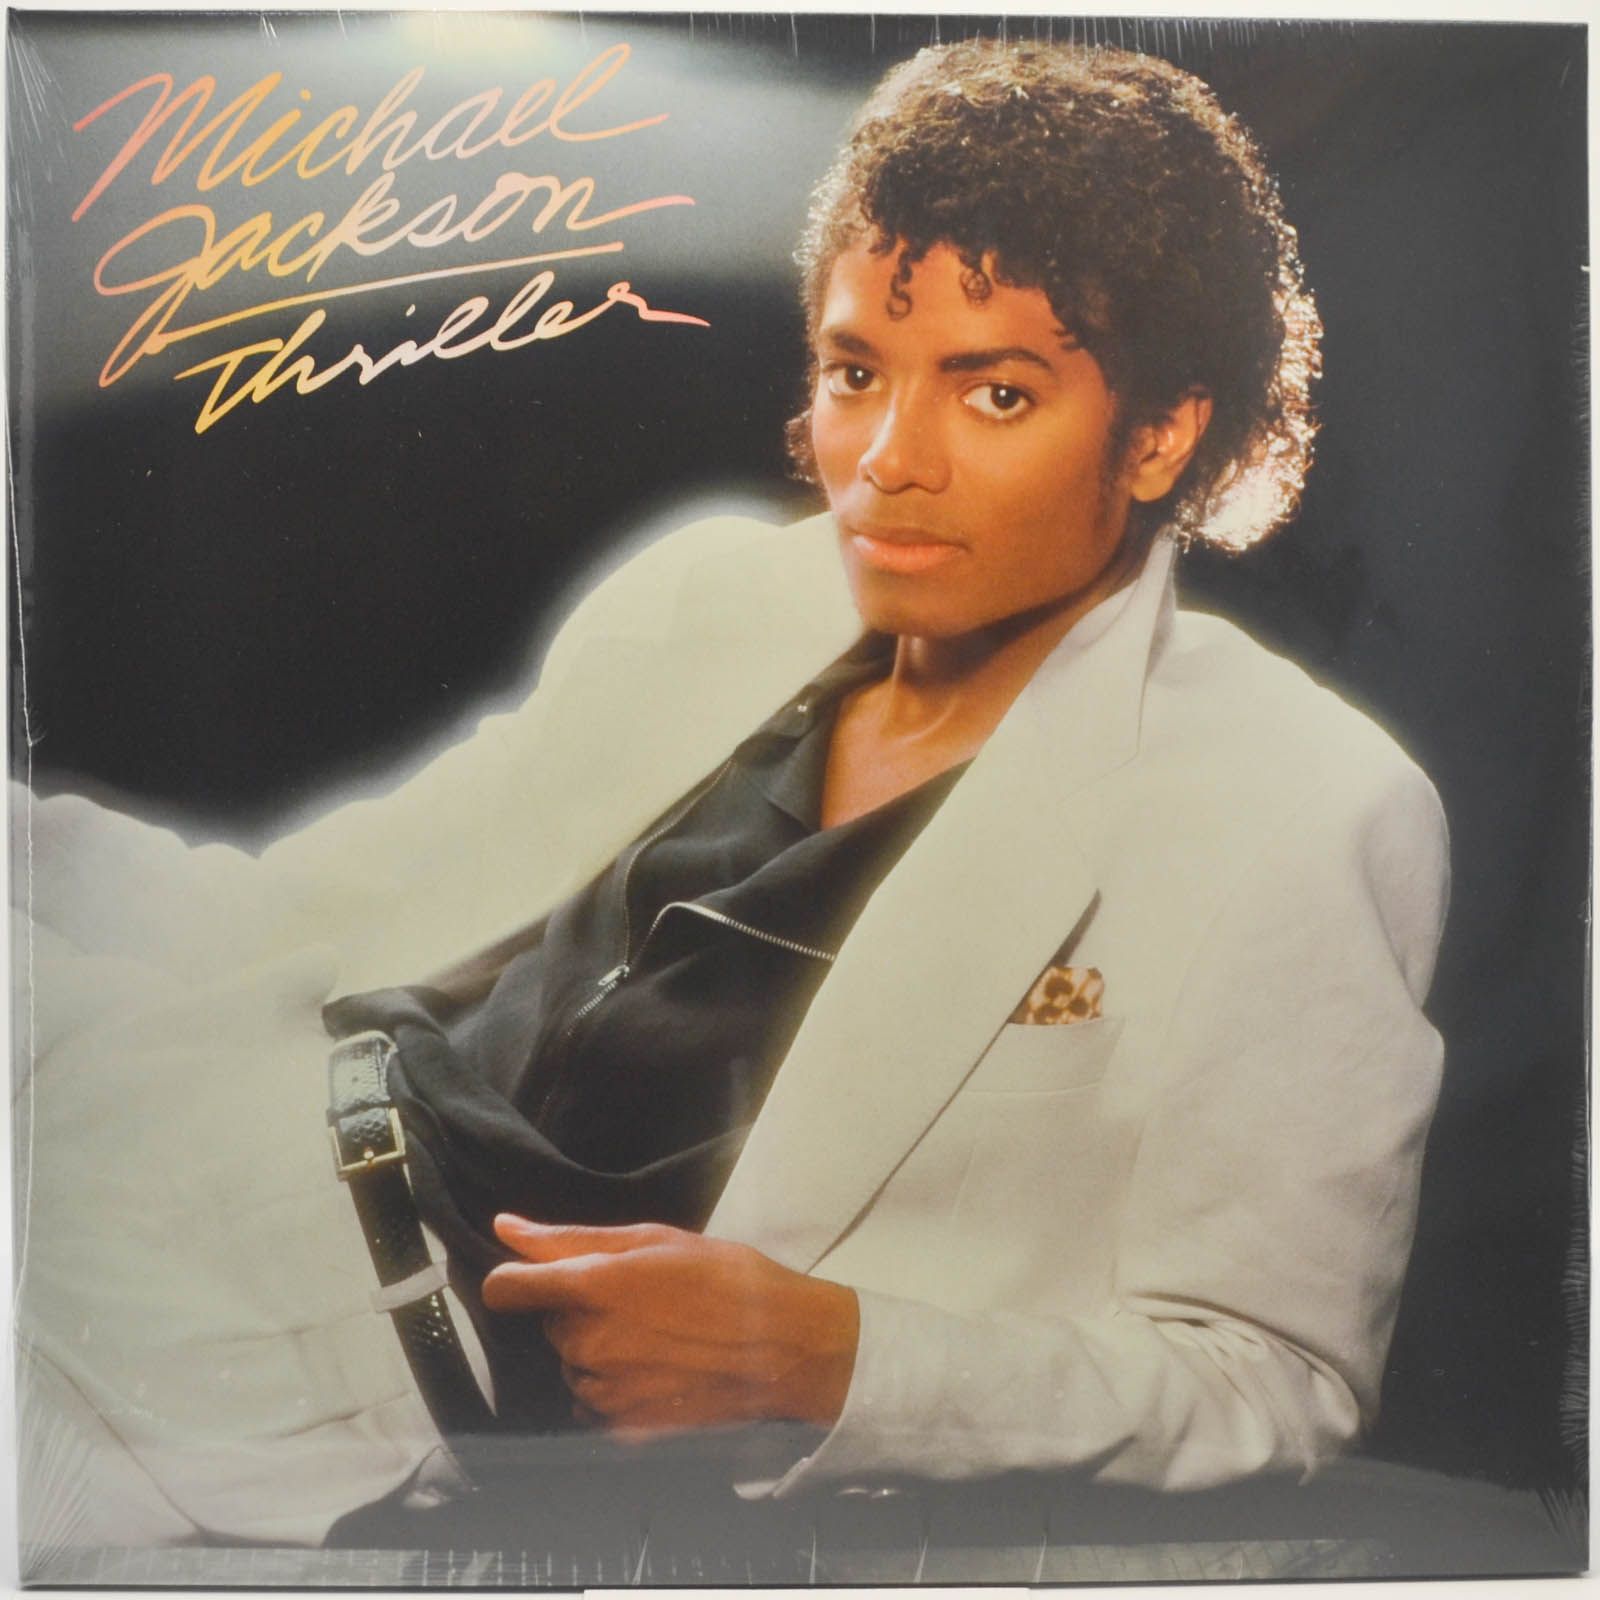 Thriller, 1982